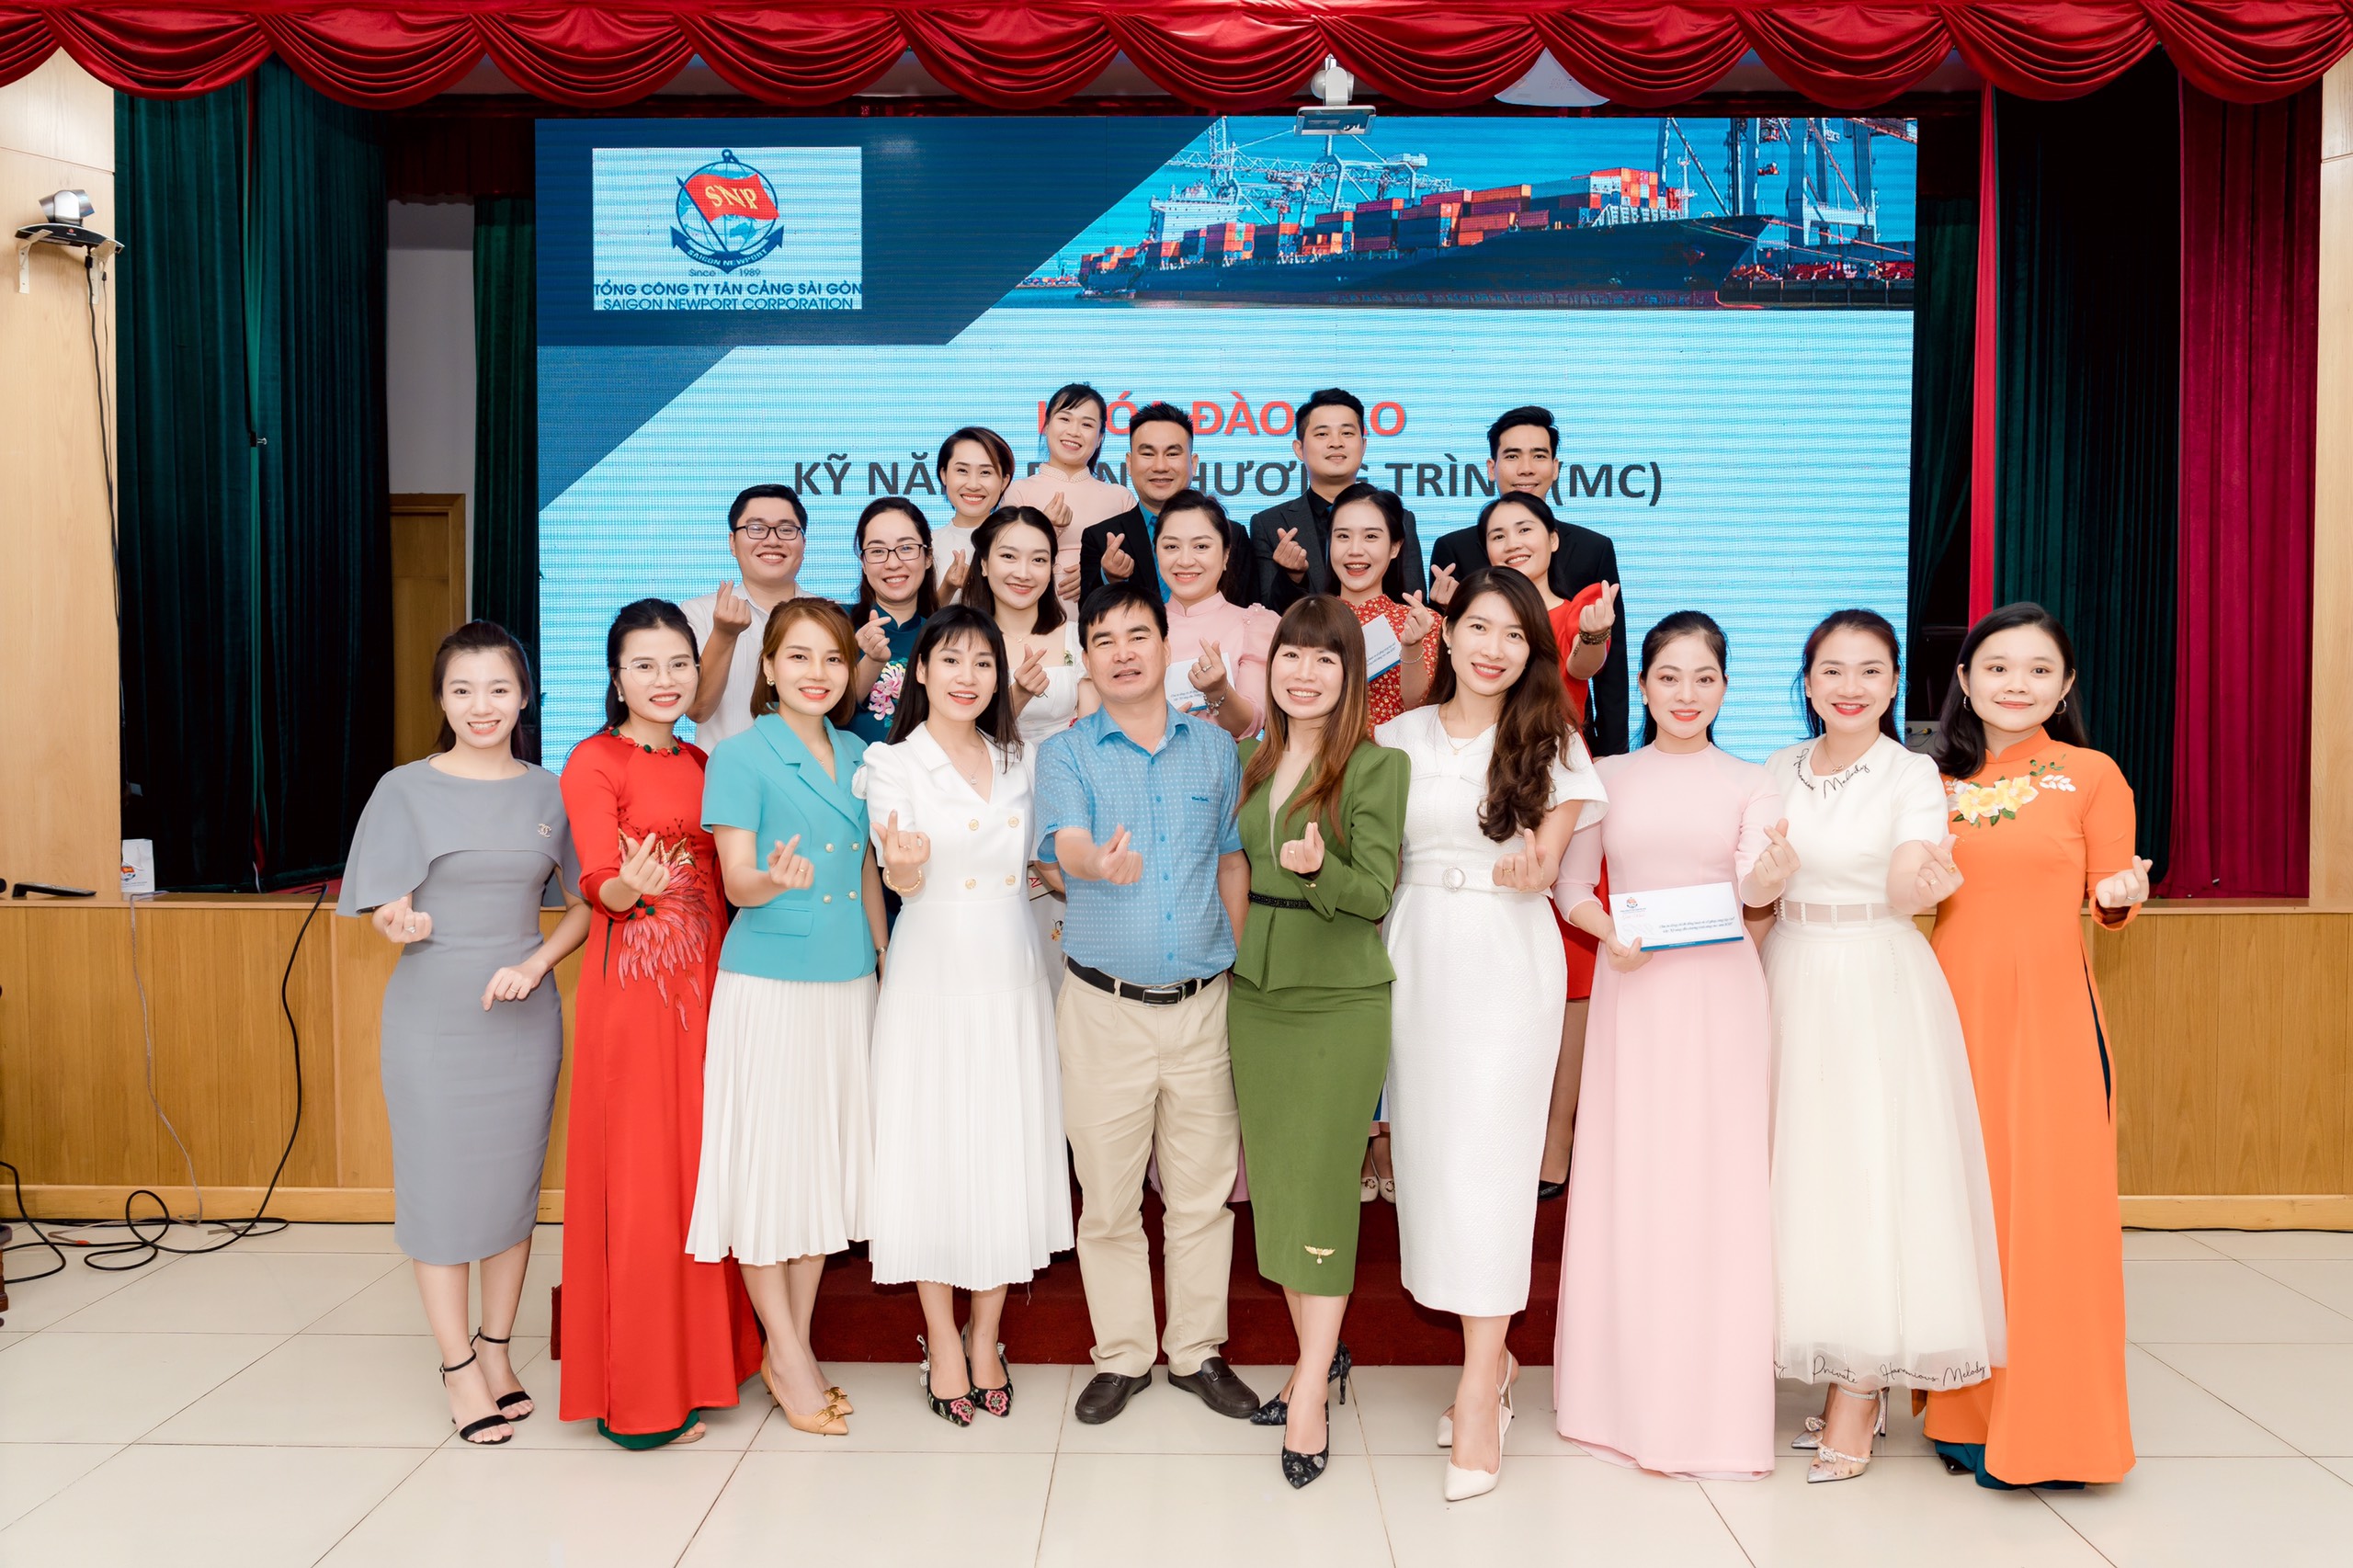 Đào tạo MC nội bộ cho doanh nghiệp - Bước đi vững chắc của Tổng công ty Tân cảng Sài Gòn